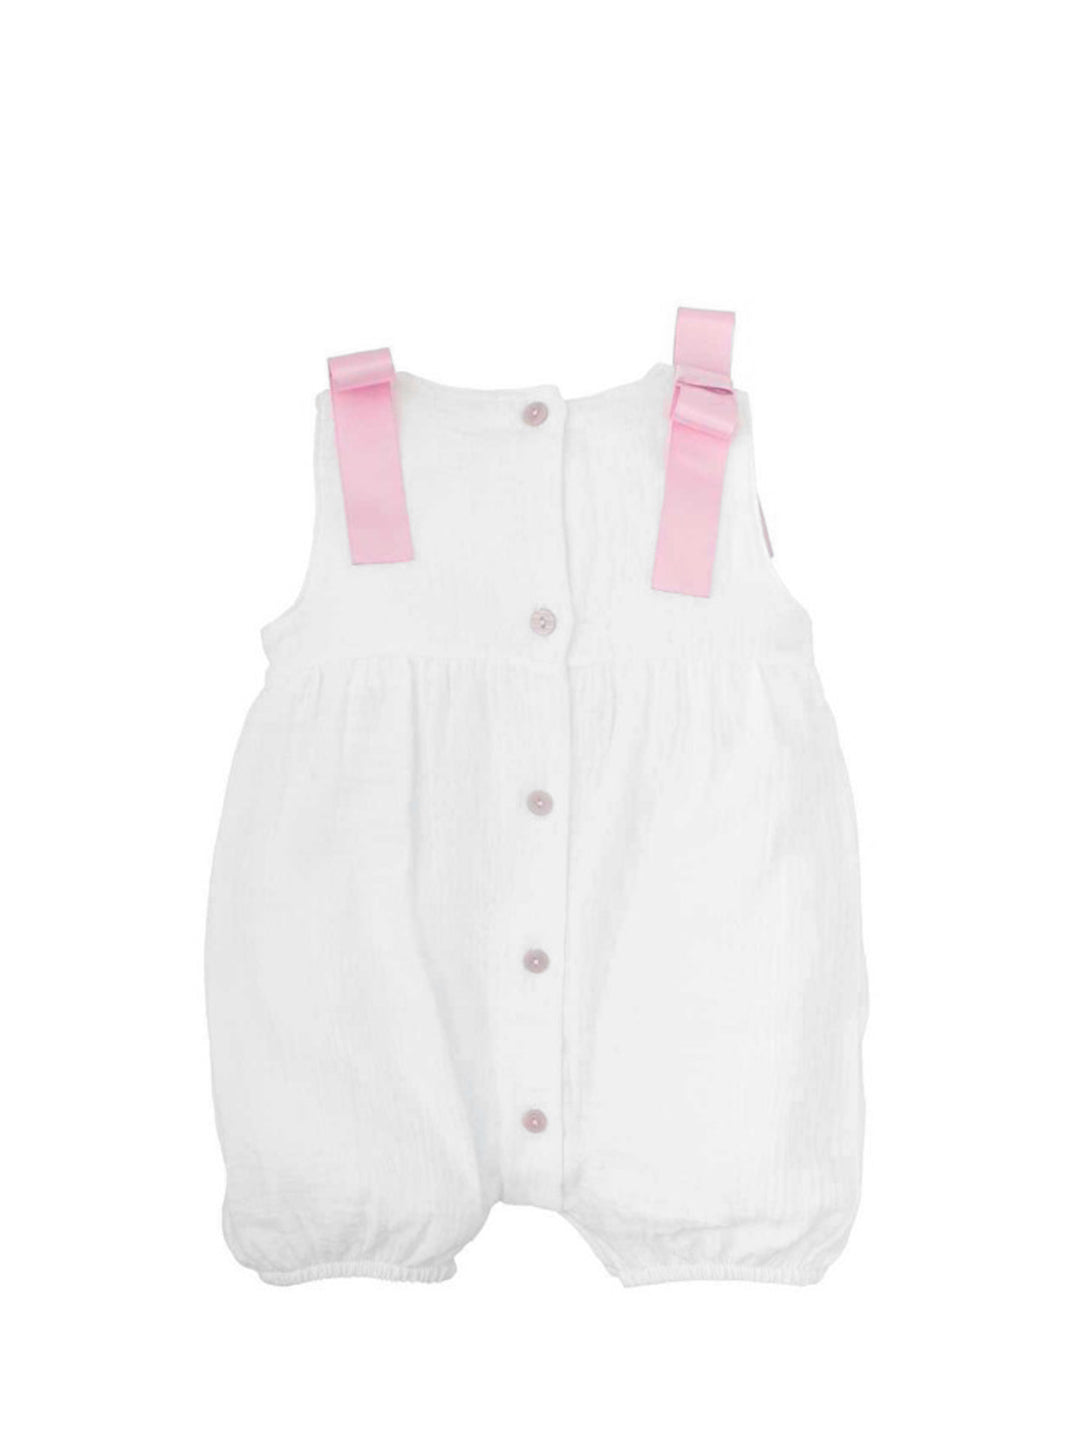 Babidu pagliaccetto neonato bianco con fiocchi rosa